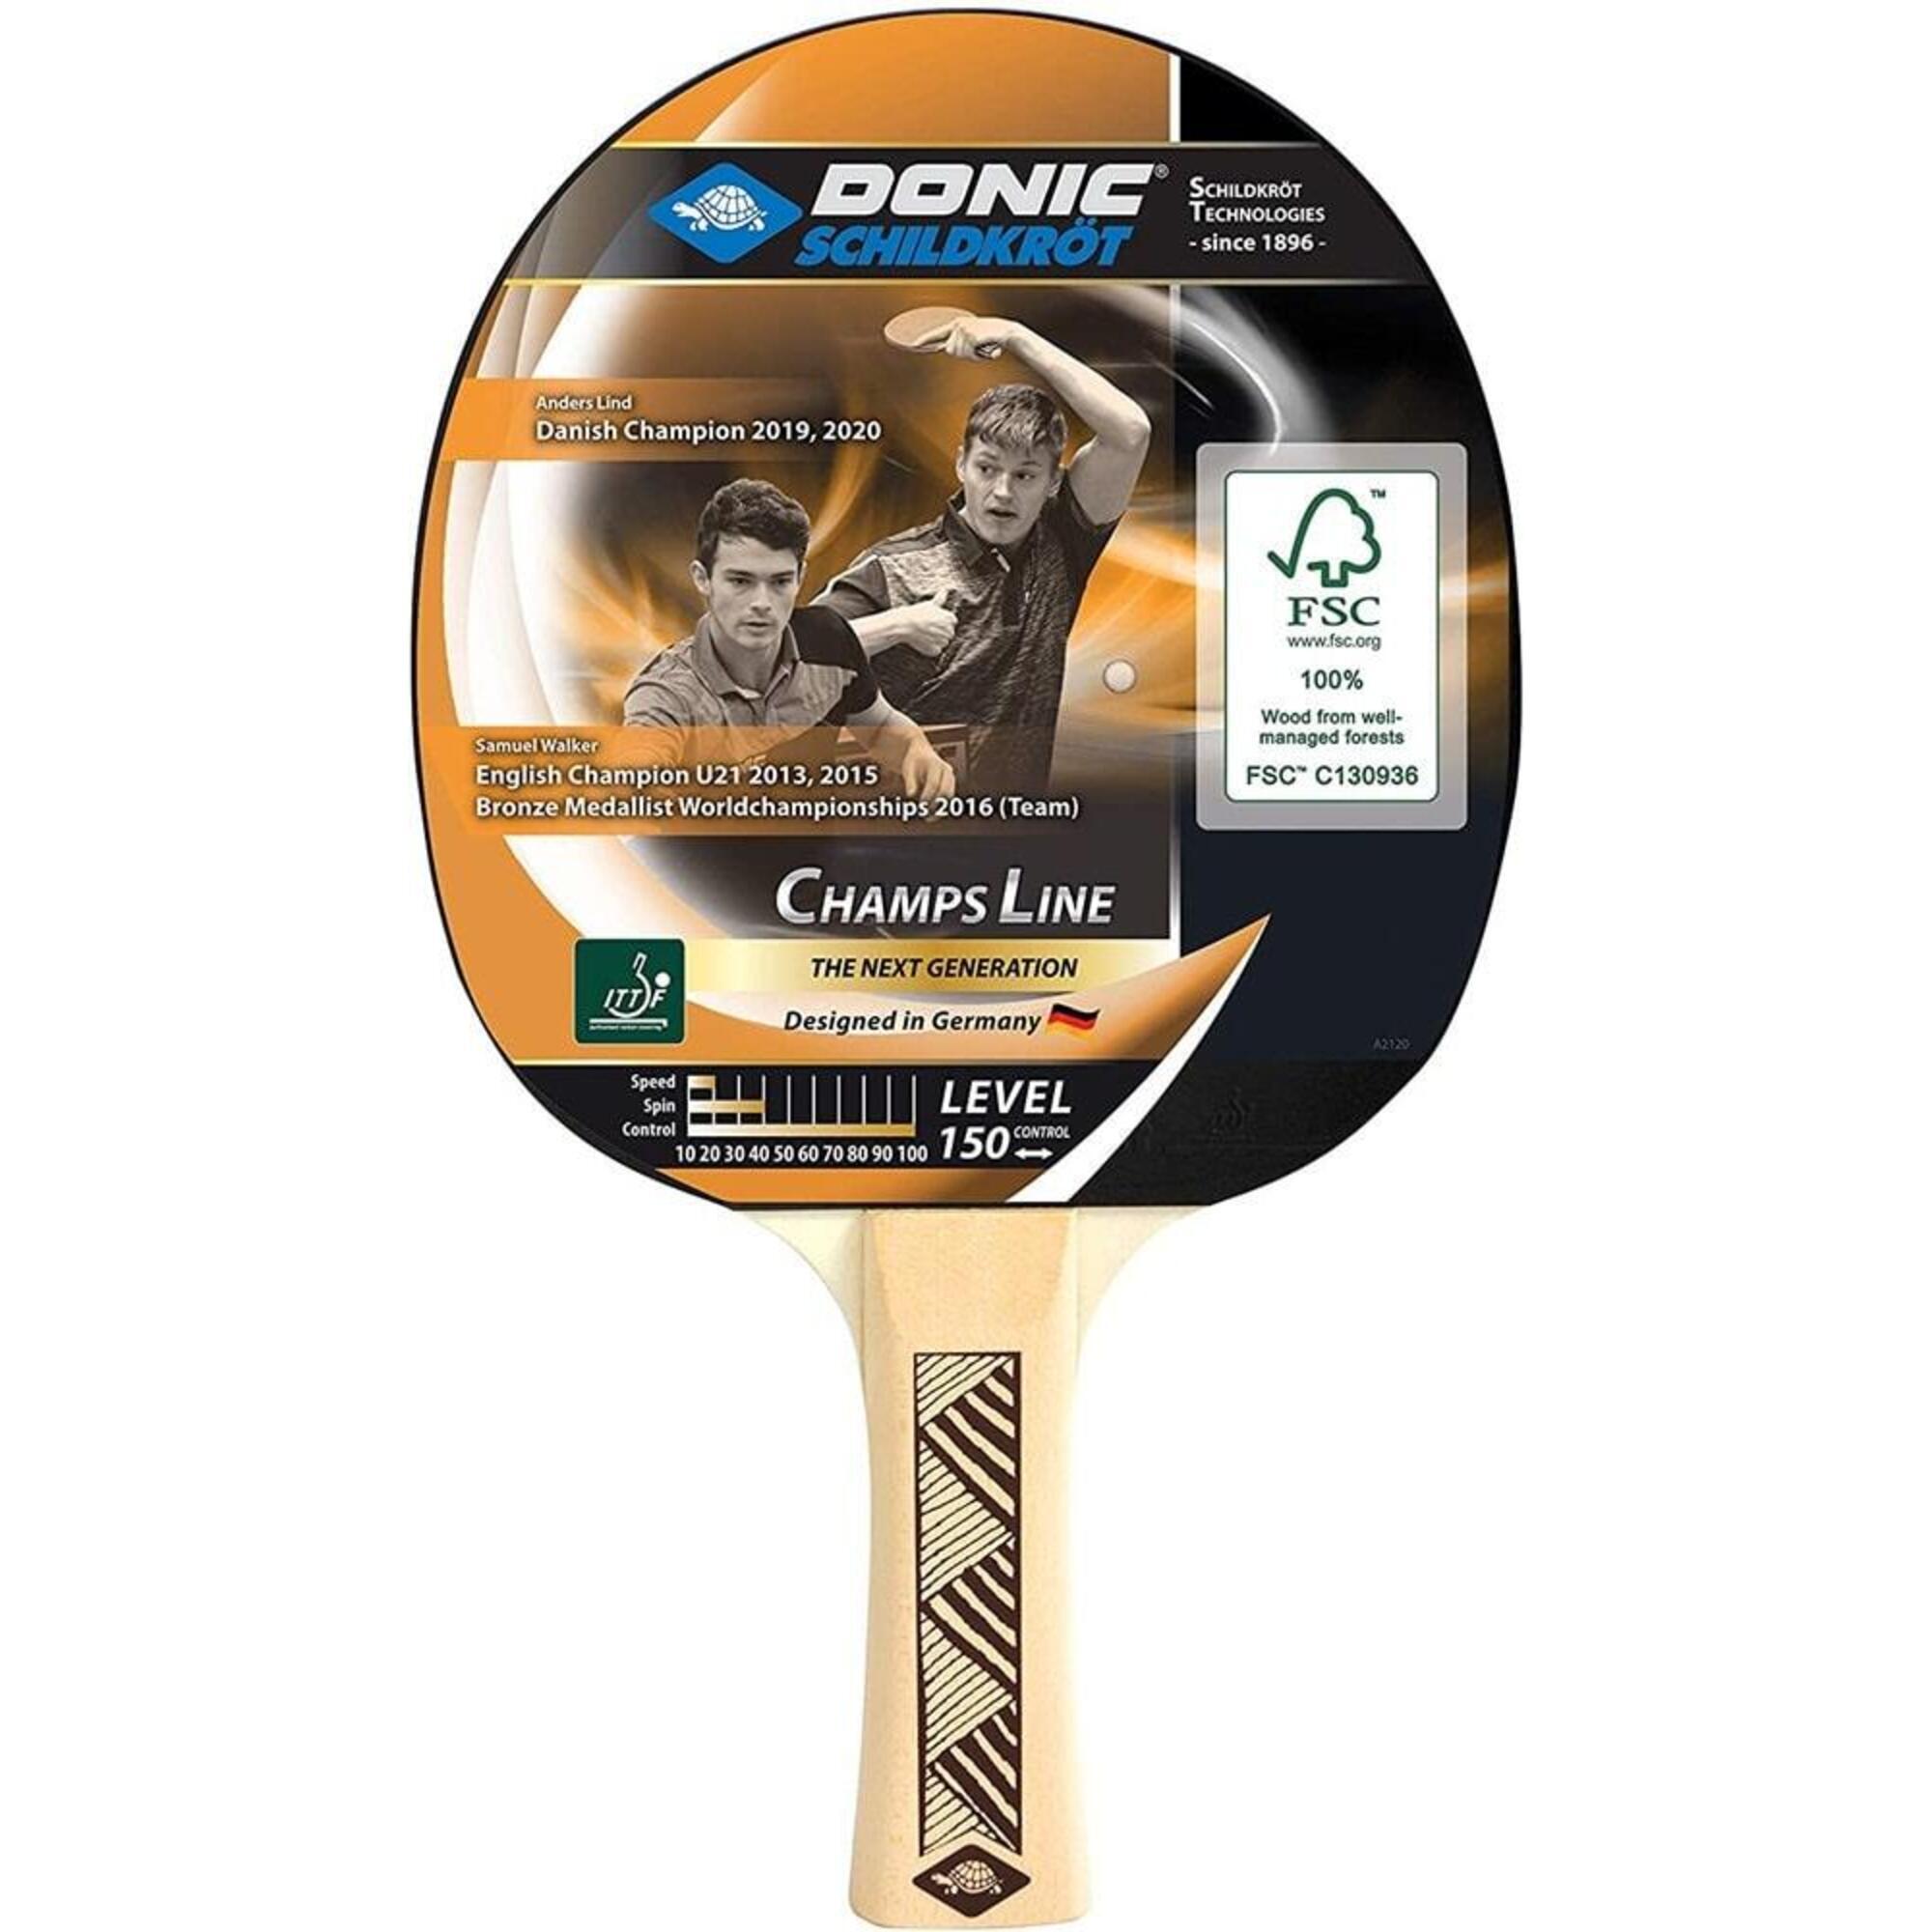 Donic-Schildkrot Multicolour Champs Line 150 Table Tennis Paddle